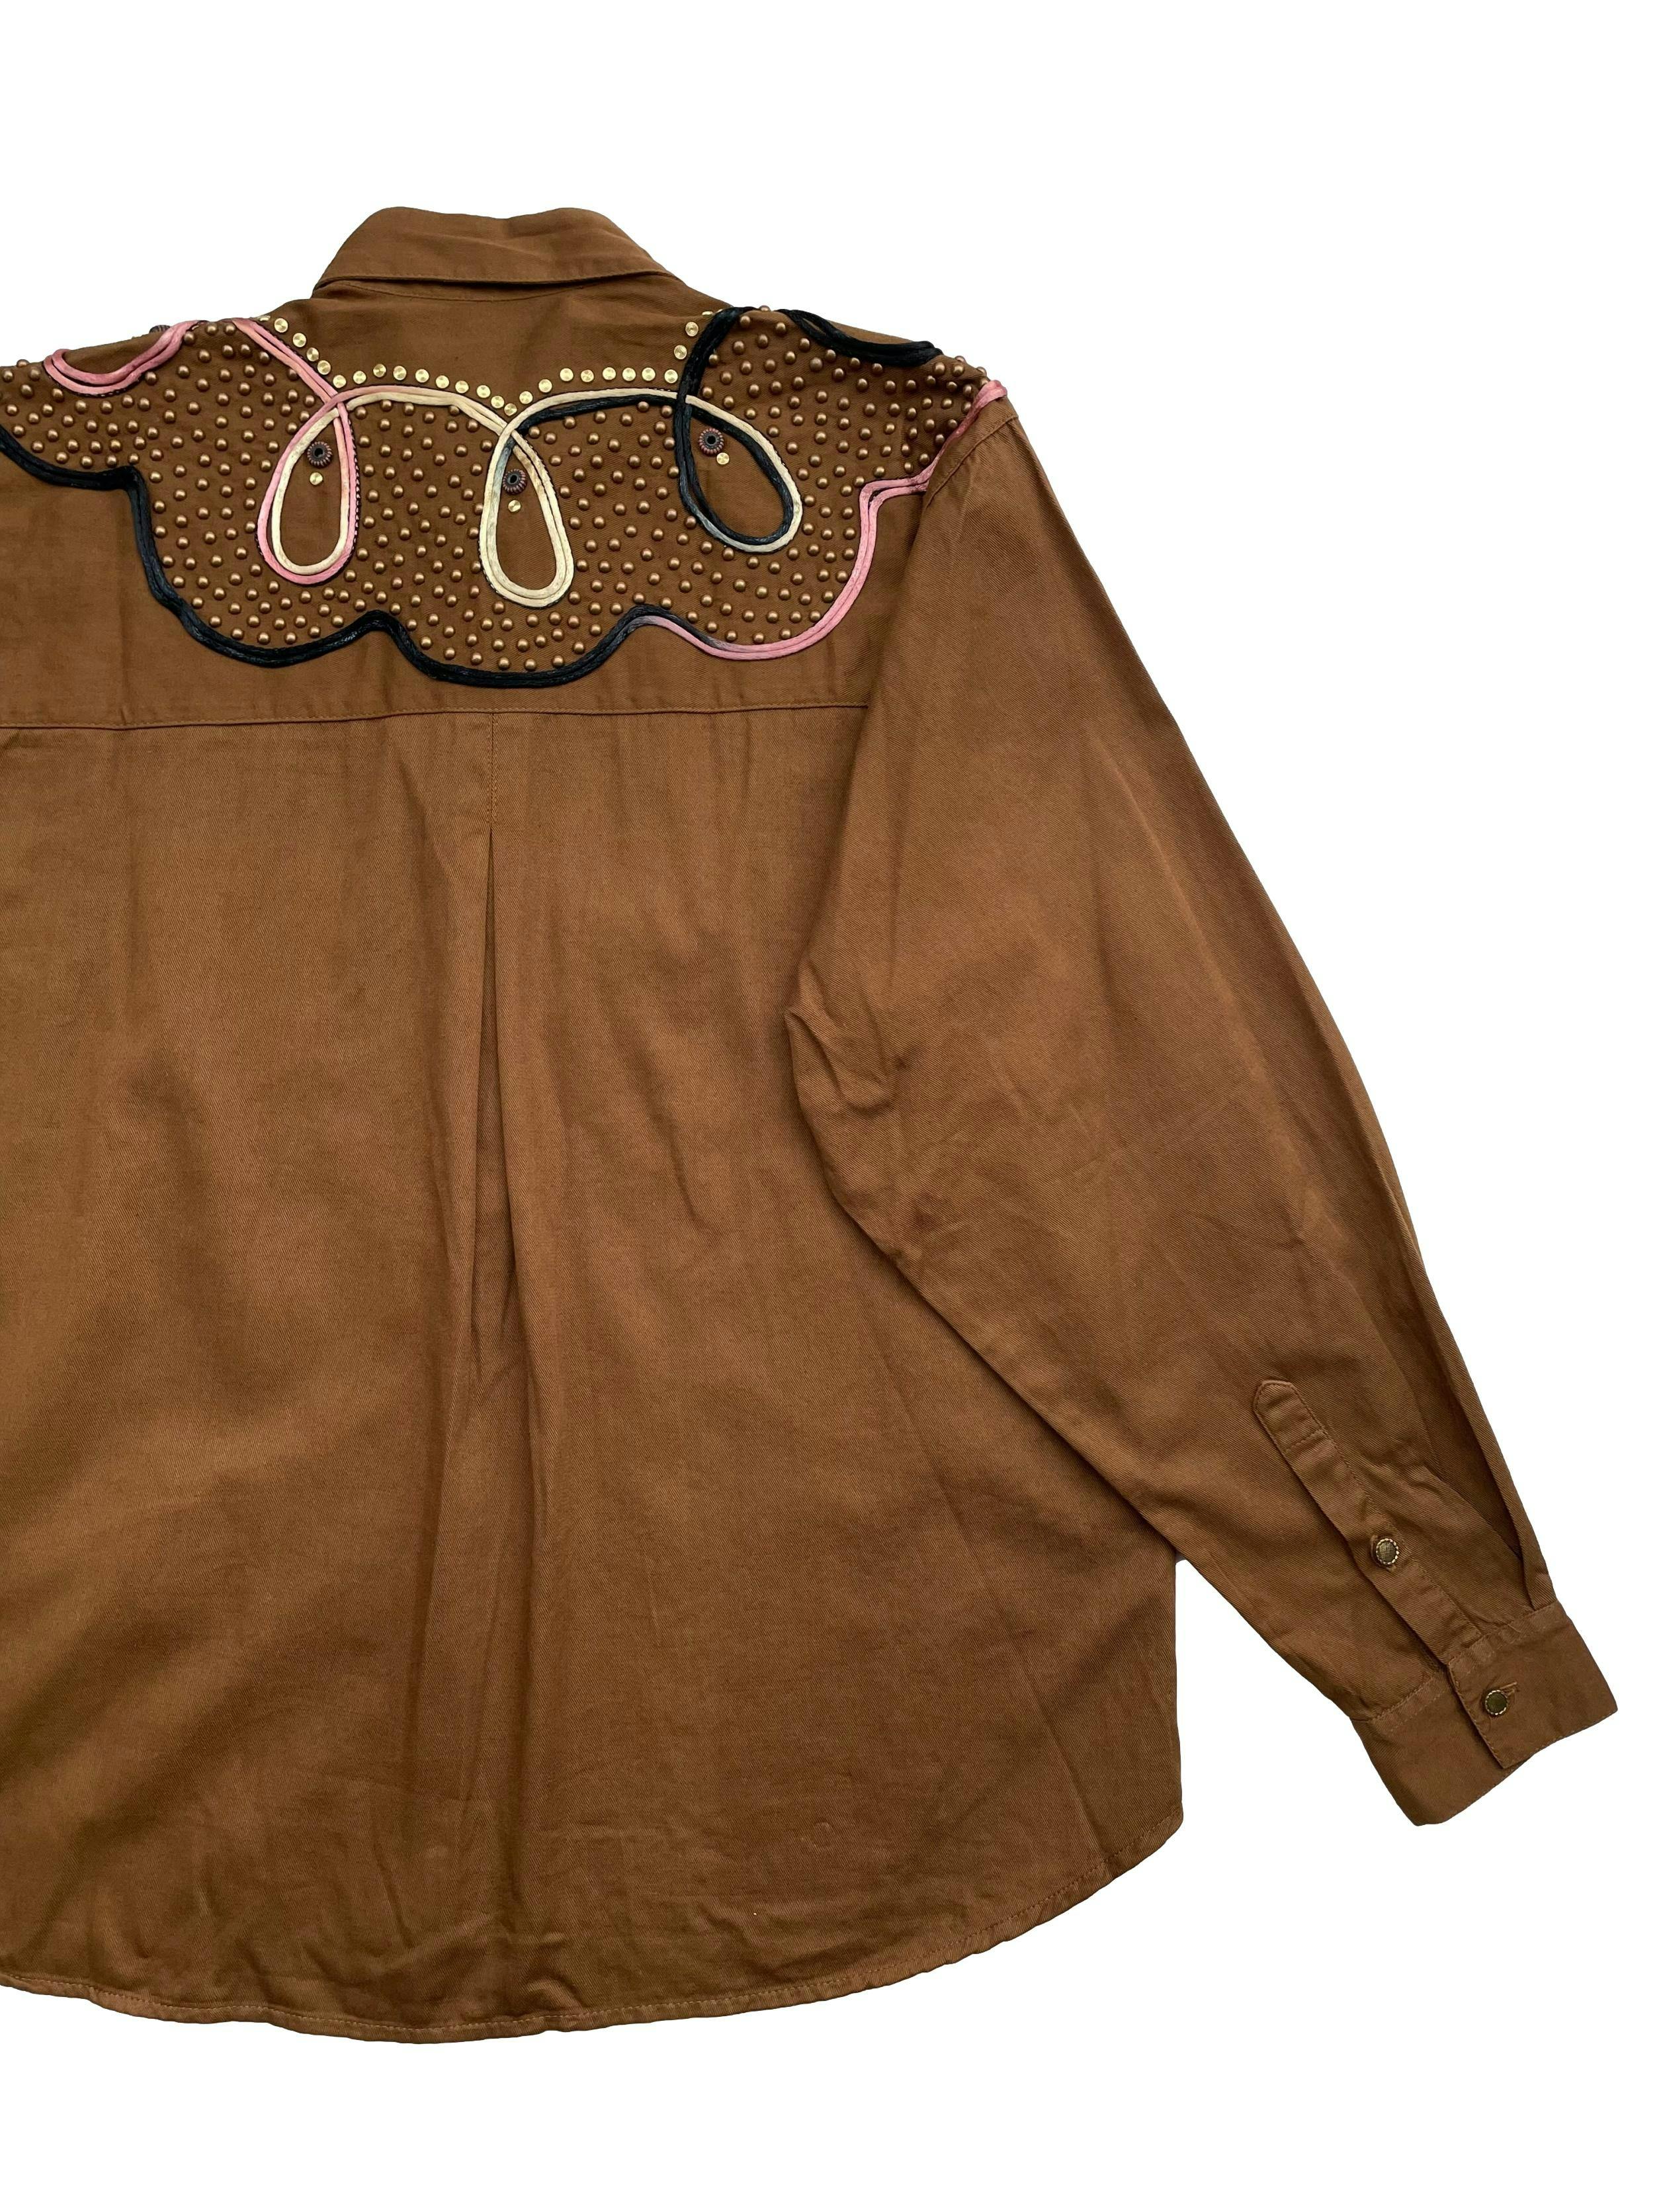 Blusa vintage Caché marrón,100% algodón. Con tachas y aplicaciones en negro, dorado y rosado. Hombros 45cm, Largo 63cm.Talla S en en etiqueta.